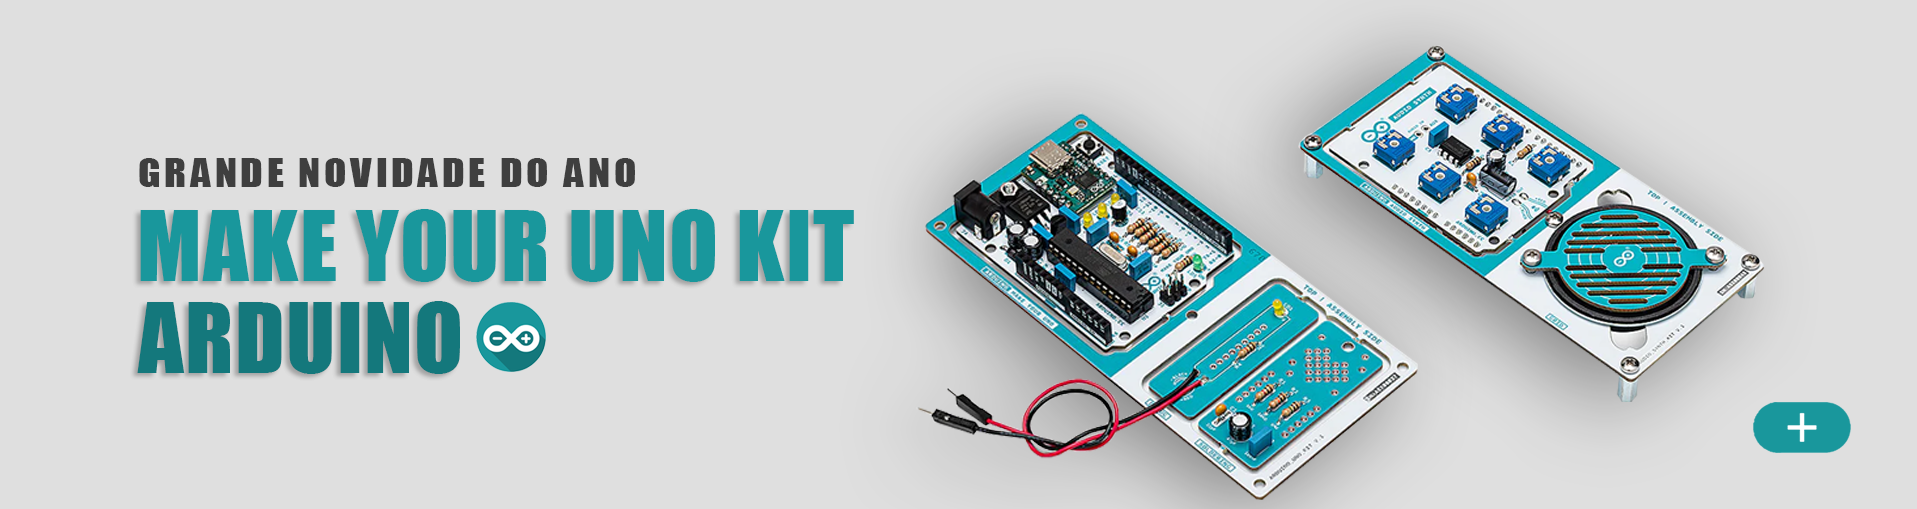 Kit Arduino DIY Para Soldar MAKE YOUR UNO KIT 